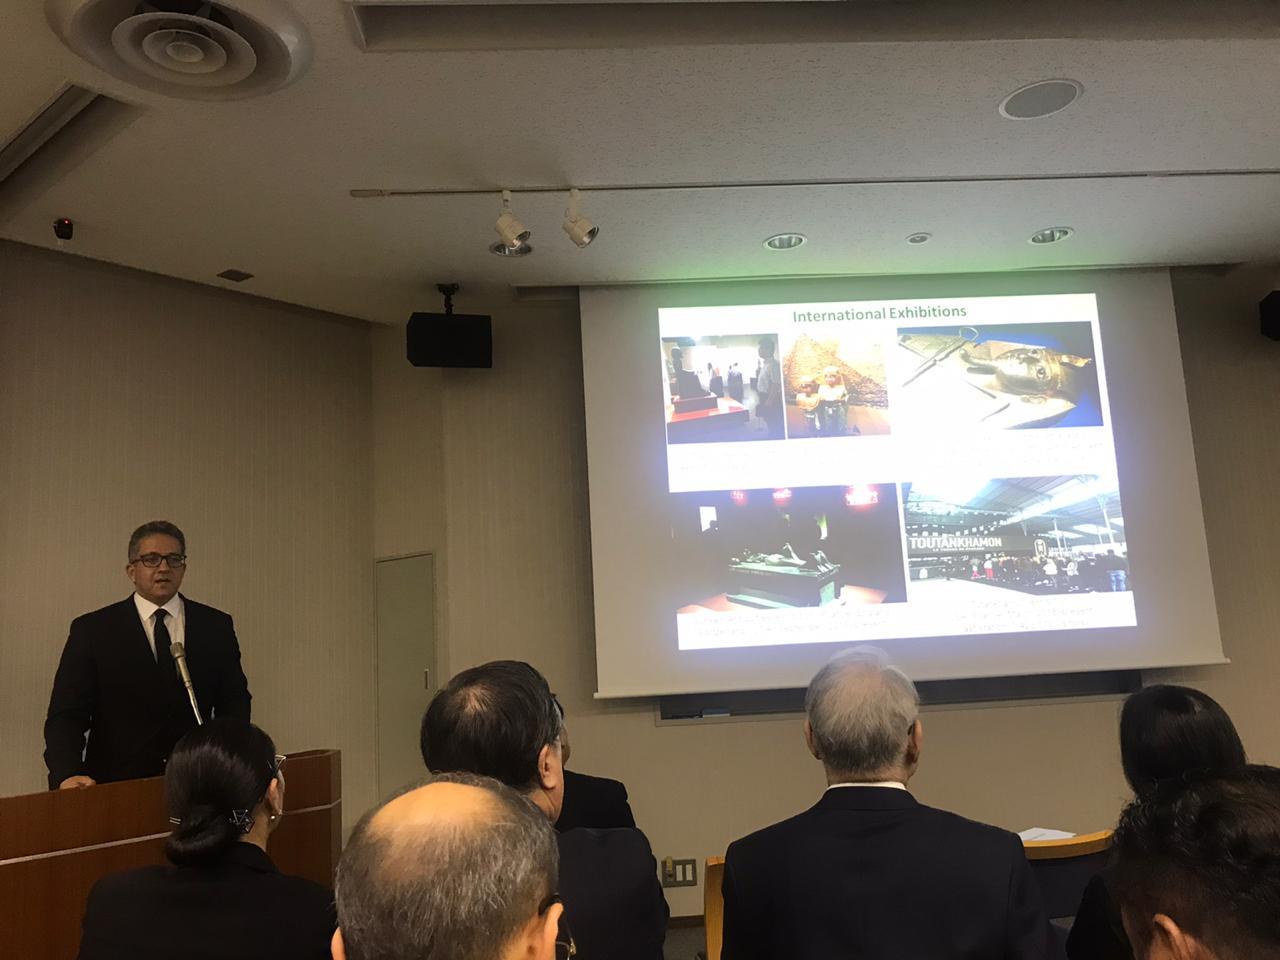 وزير الآثار يستعرض أهم المشاريع والاكتشافات في محاضرة باليابان